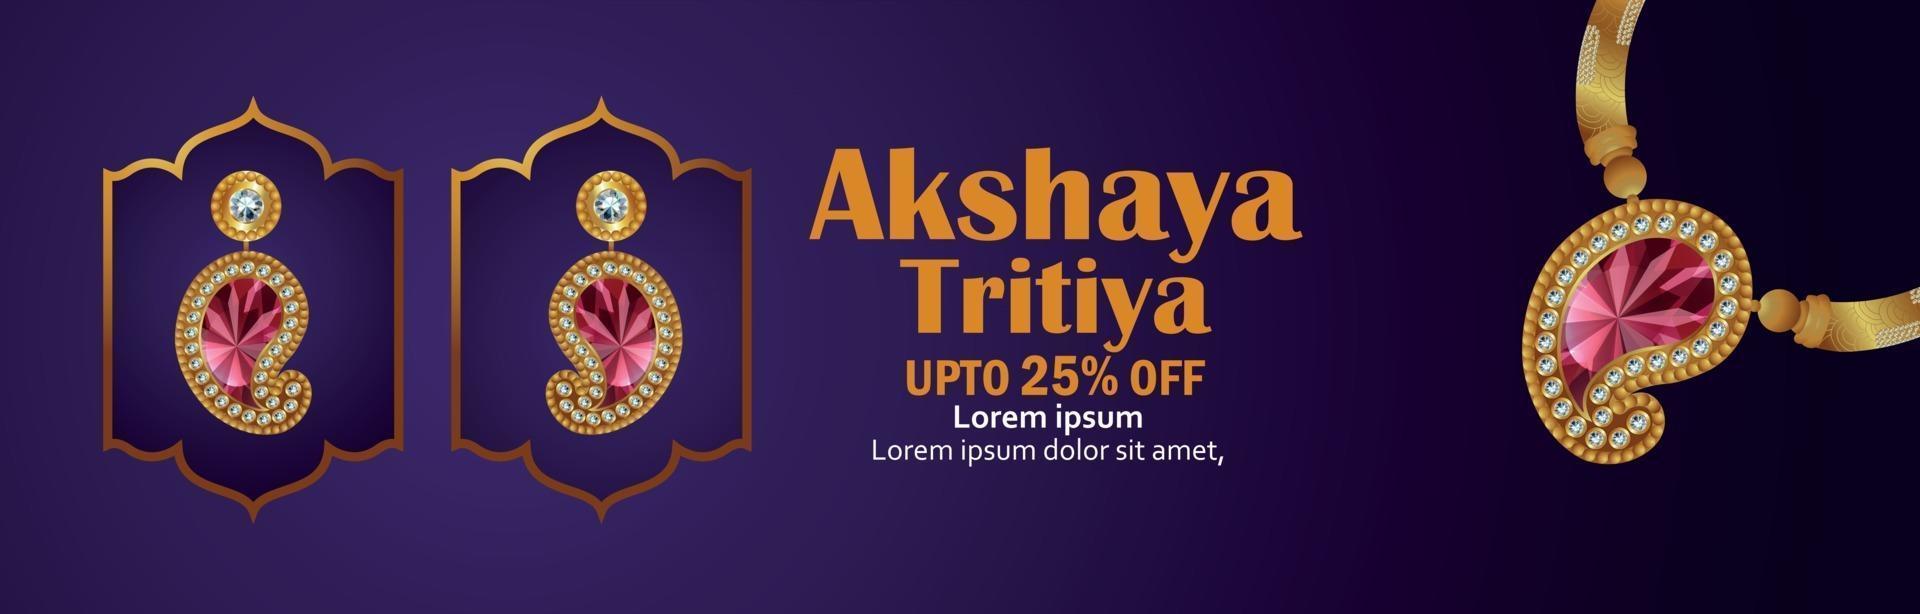 festival indio de akshaya tritiya venta encabezado con collar de oro vector